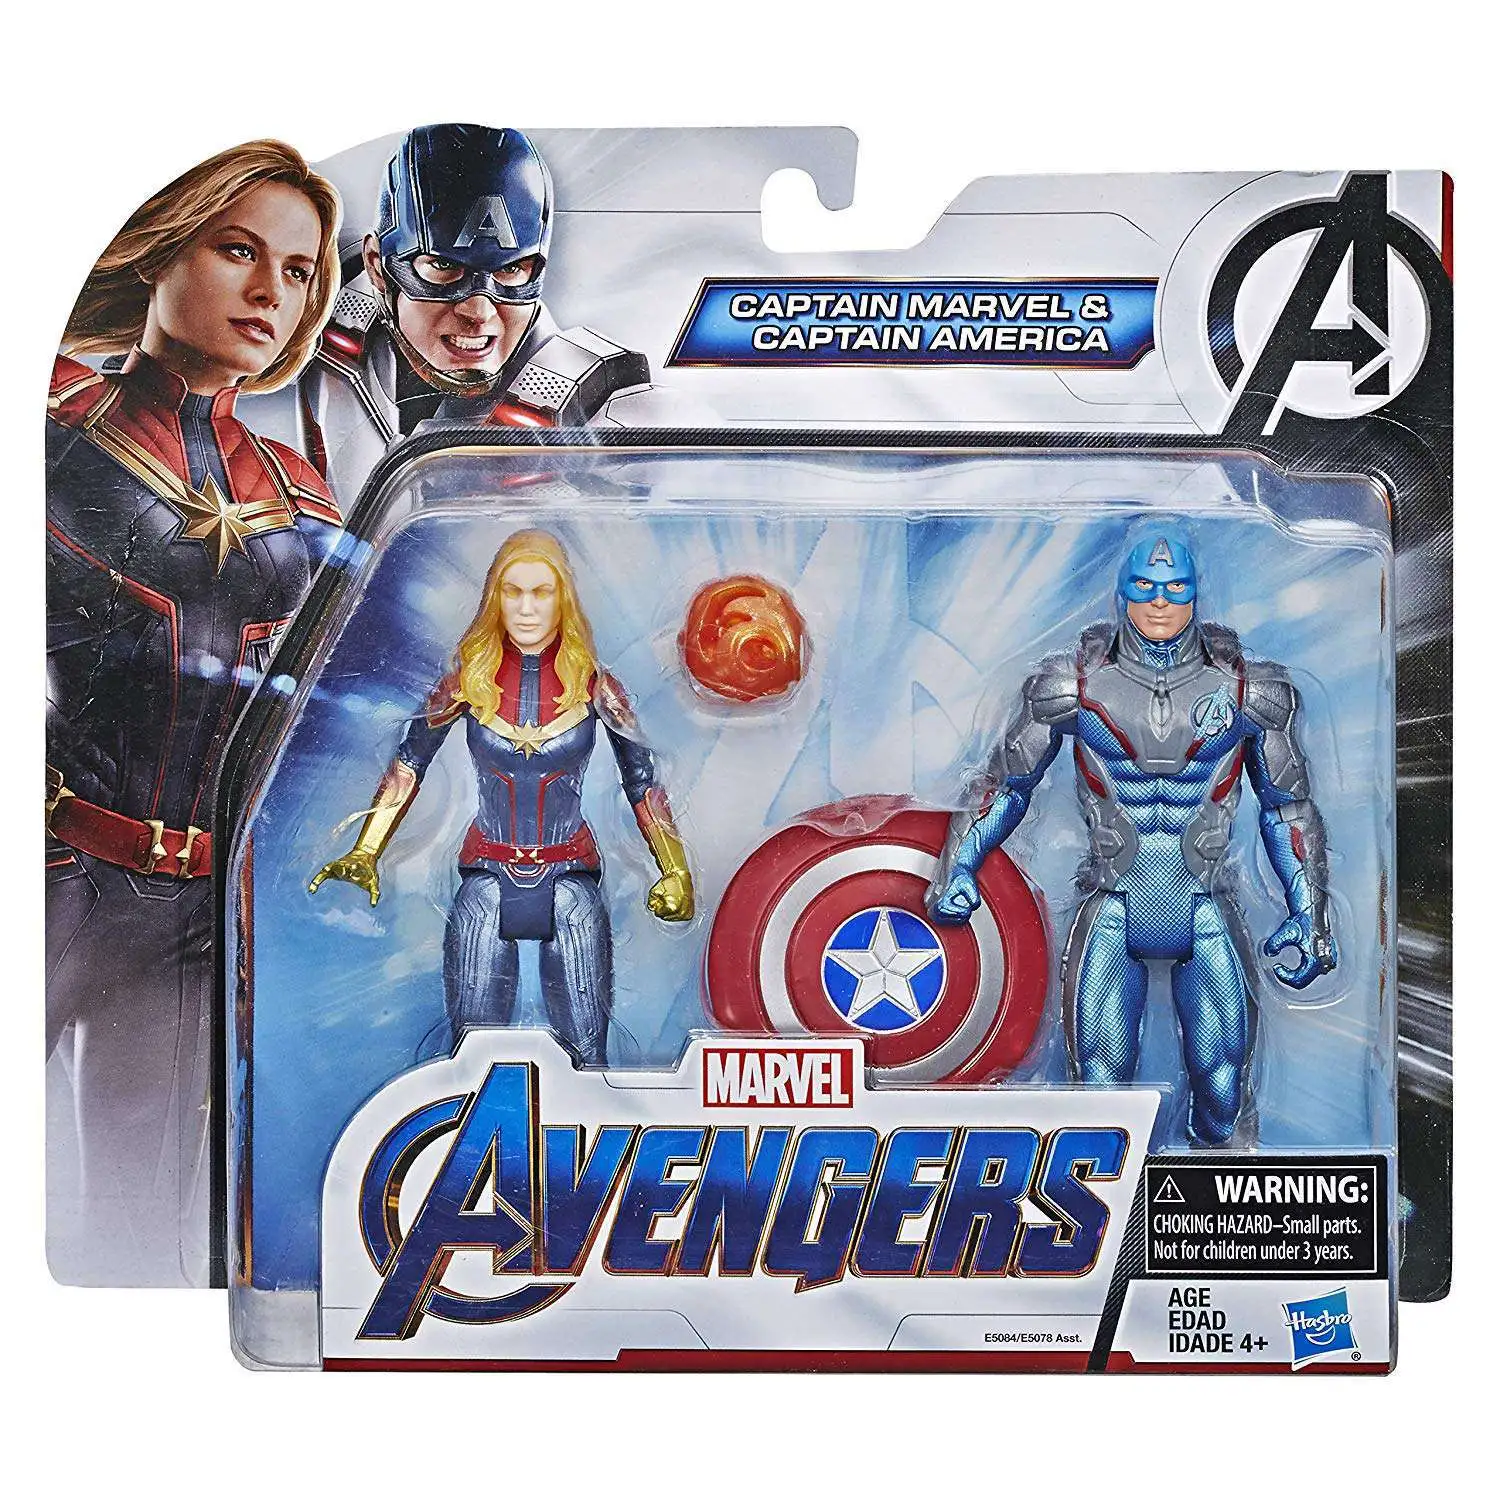 Avengers Endgame Captain Marvel Figure Action Game Toy Children Comic Super Hero for sale online 